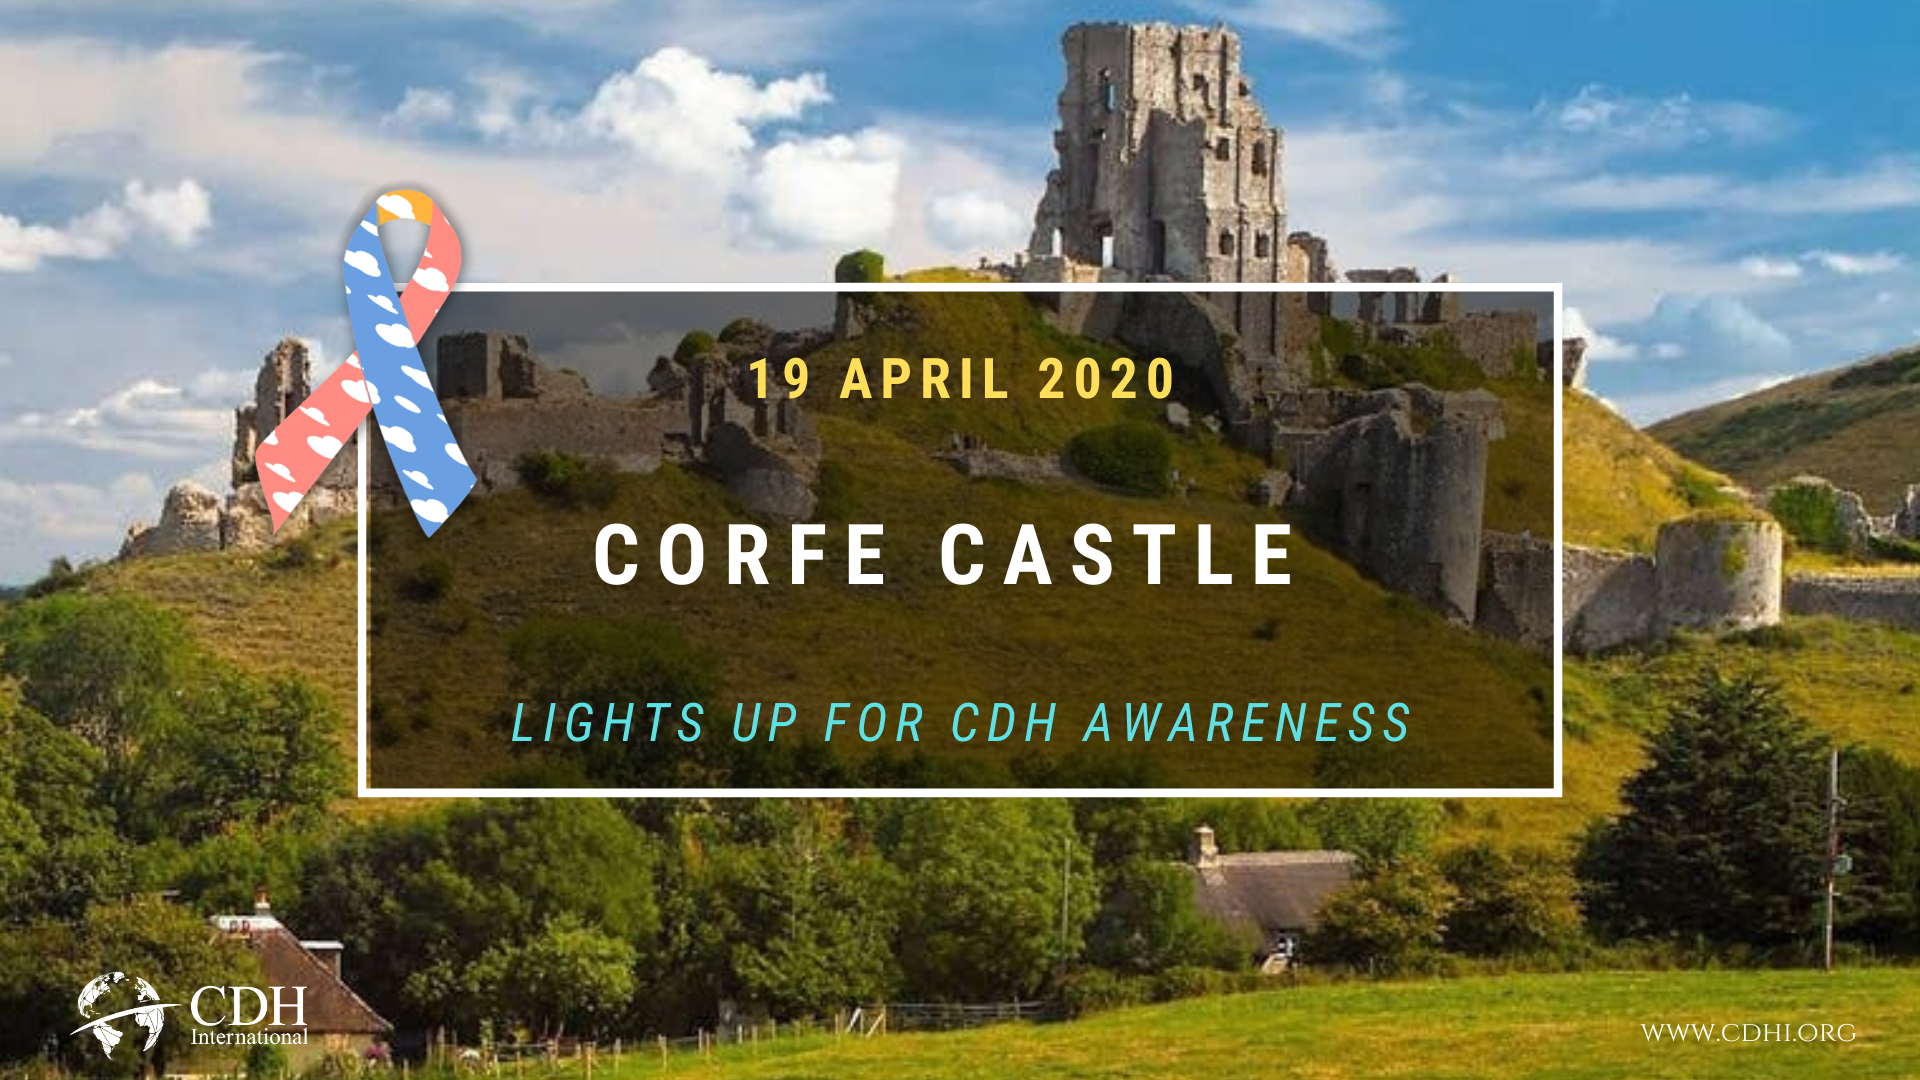 Kilkenny Castle Lights Up For CDH Awareness